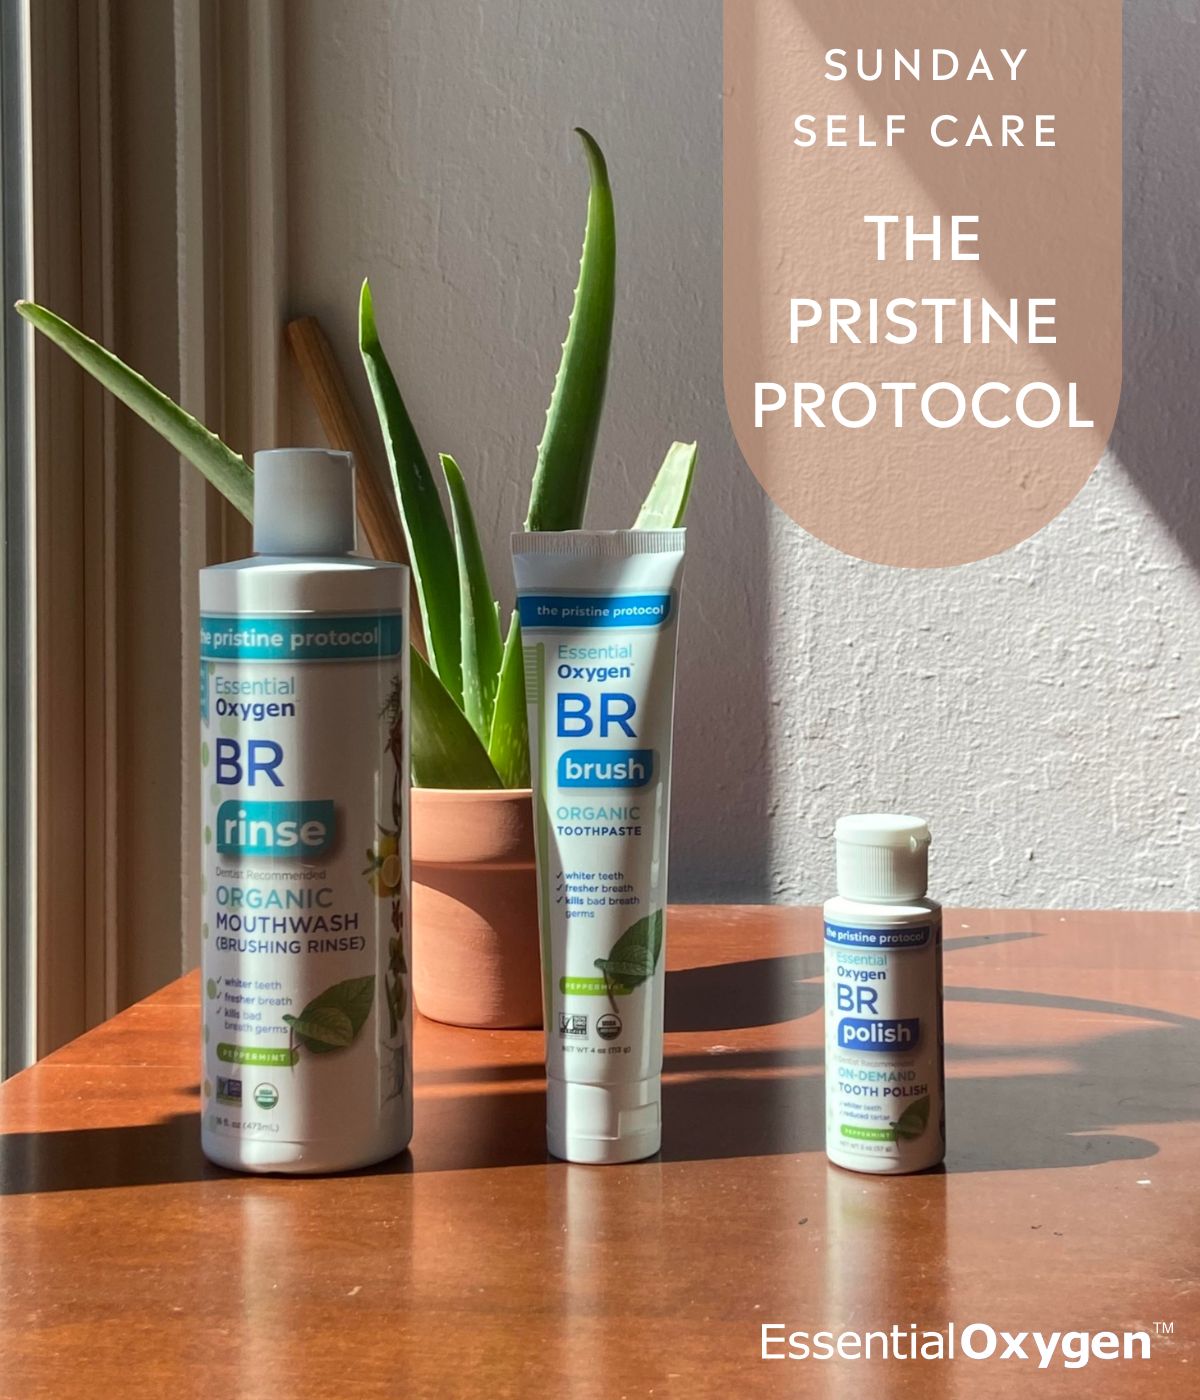 Sunday Self-Care #1: The Pristine Protocol